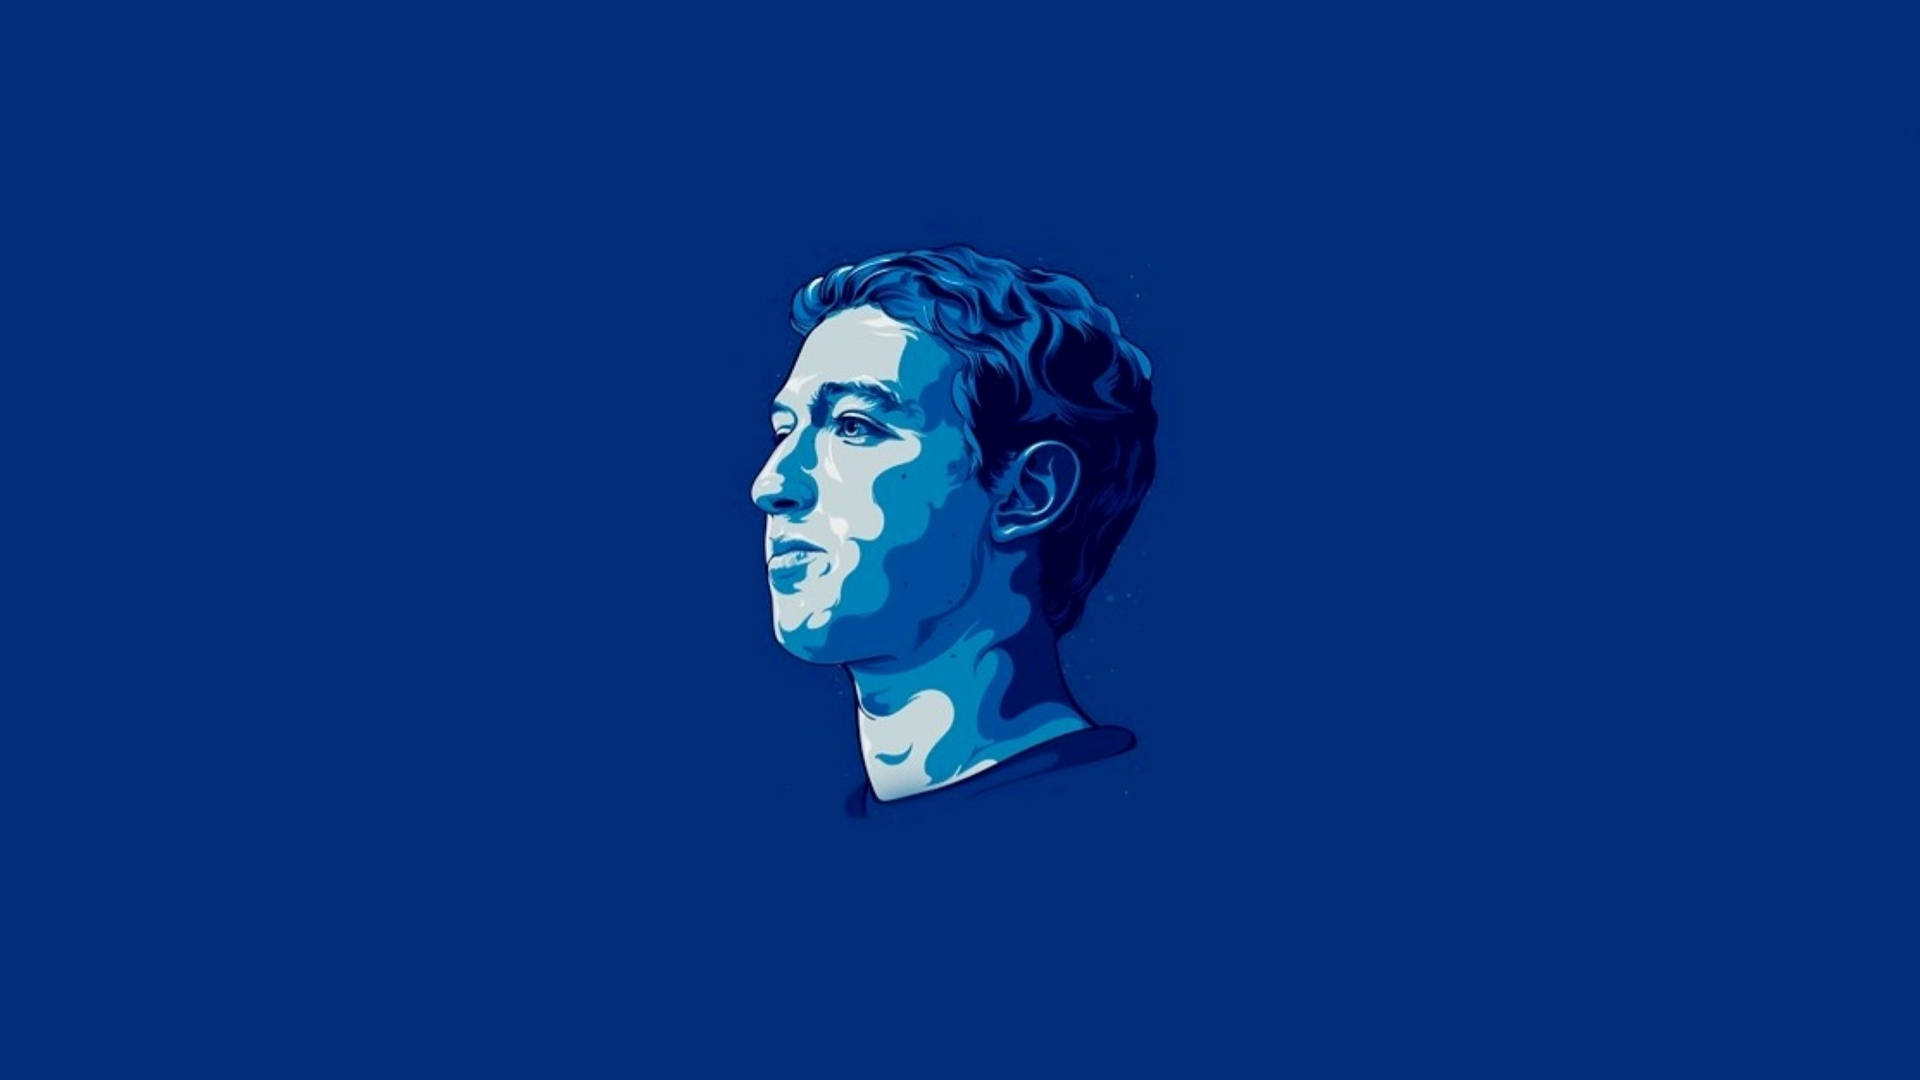 Mark Zuckerberg Blue Vector Art Wallpaper